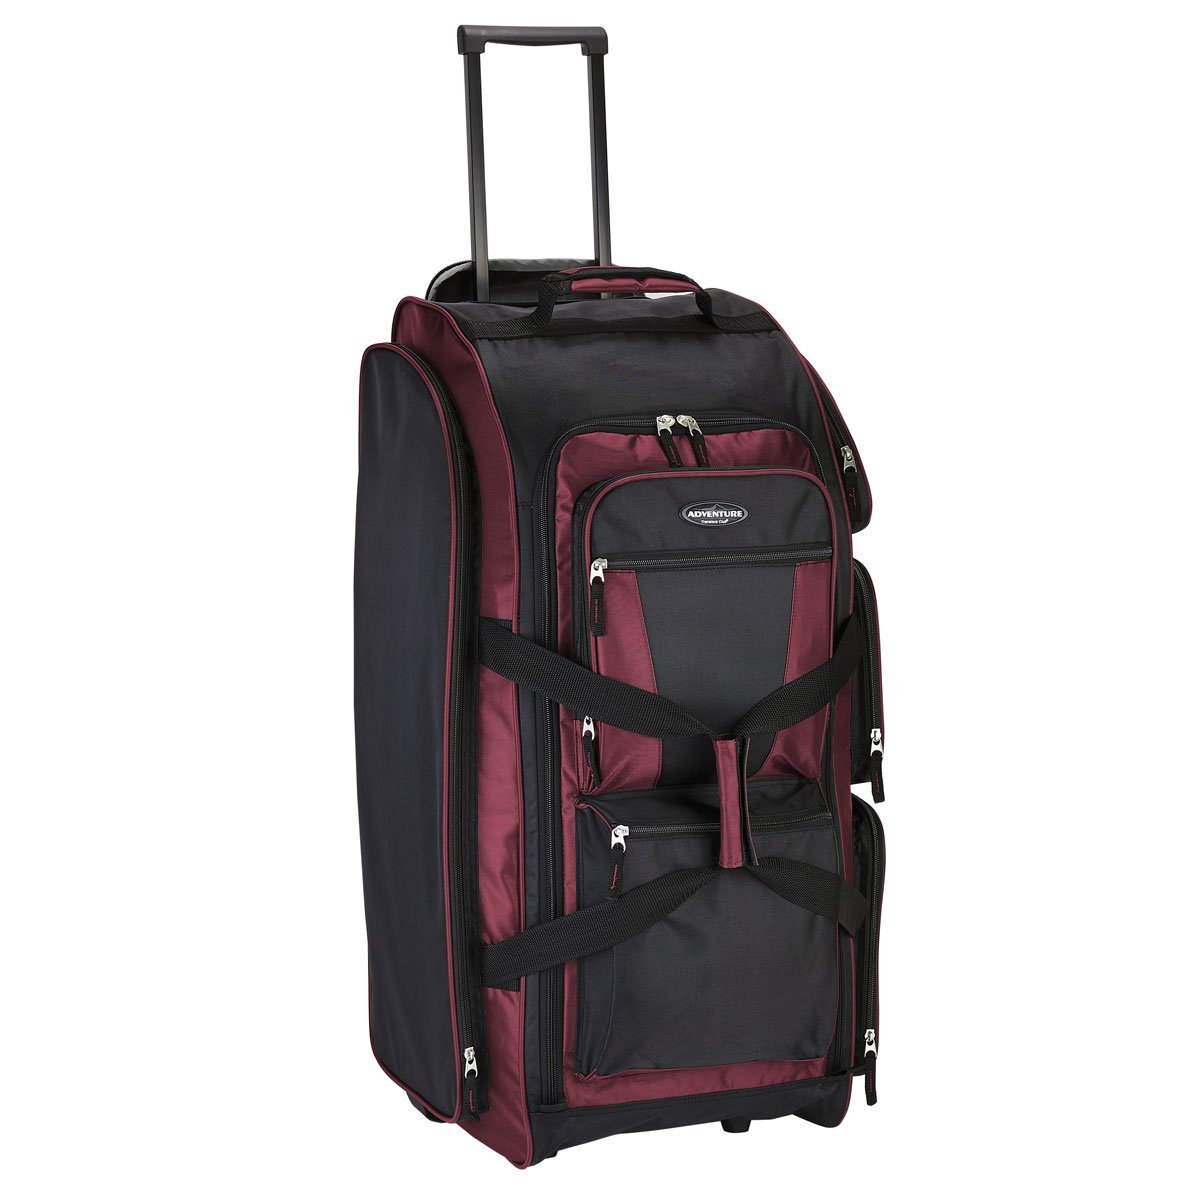 Maleta Individual Duffle Rodante 30&quot; Multi-Pocket Carm&iacute;n Travelers Club Luggage